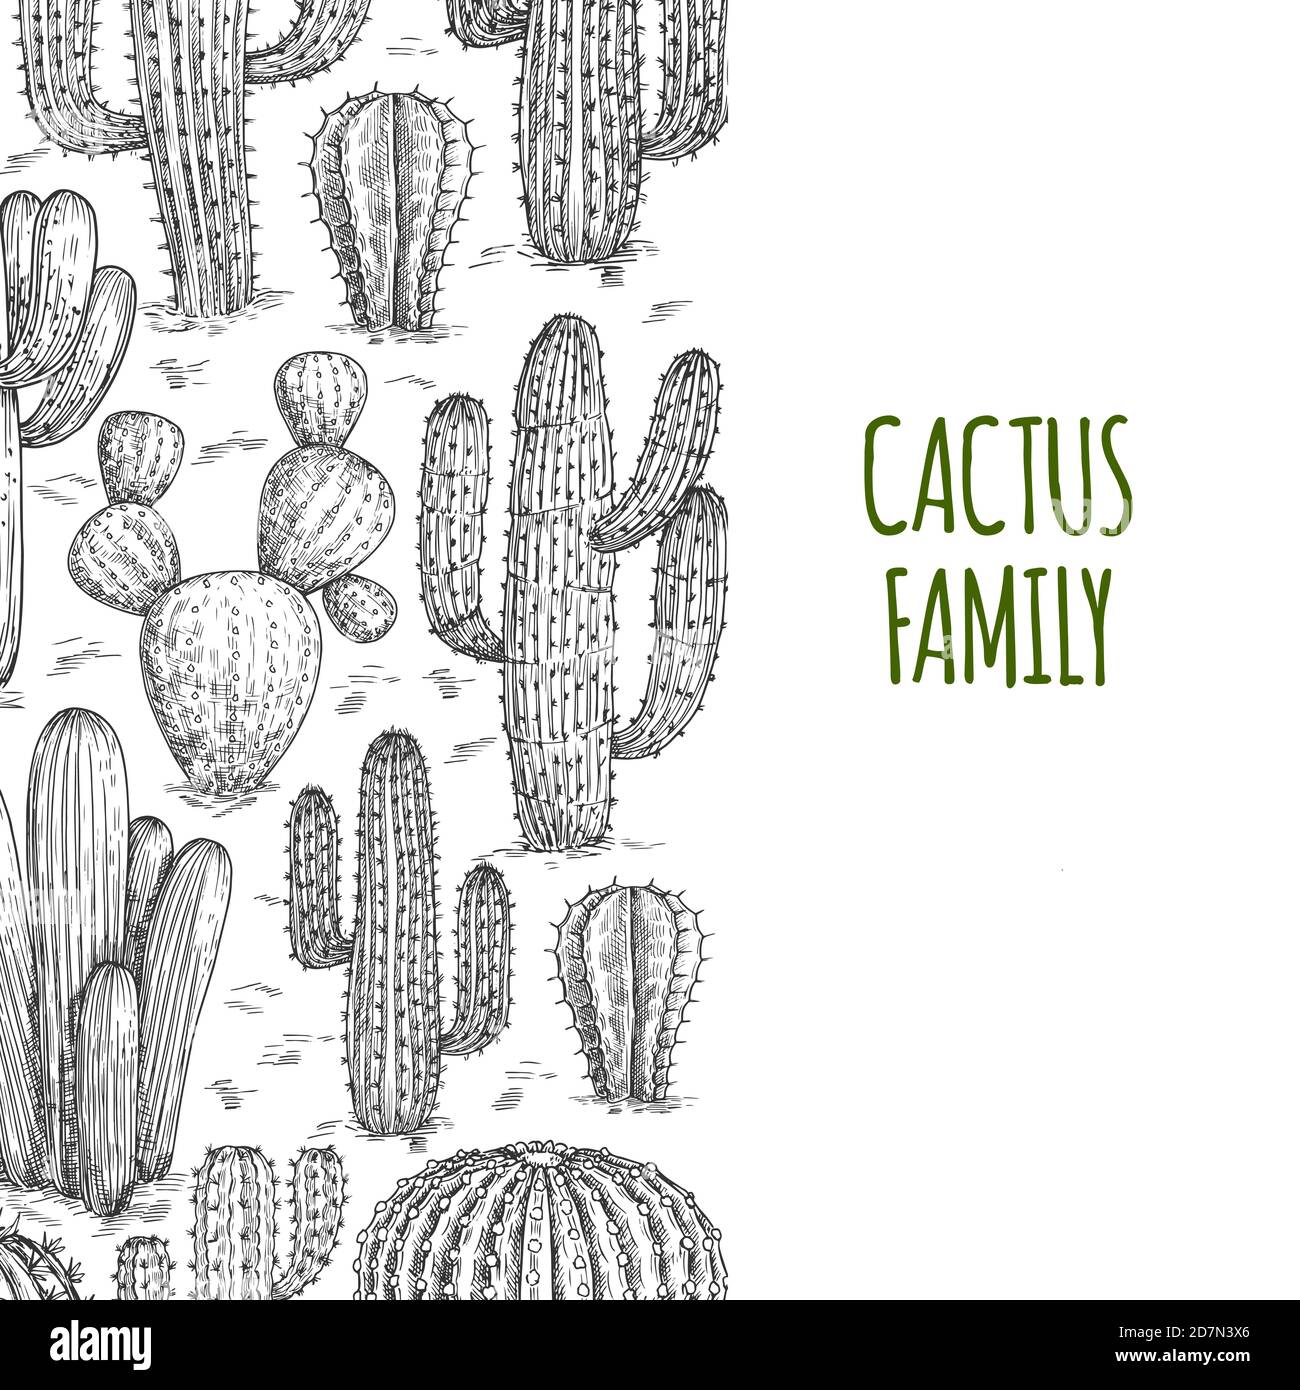 Vektor skizzierte Cactuses Banner-Vorlage mit Text. Illustration von Kaktus stachelig, Umriss Banner mit Kakteen Stock Vektor